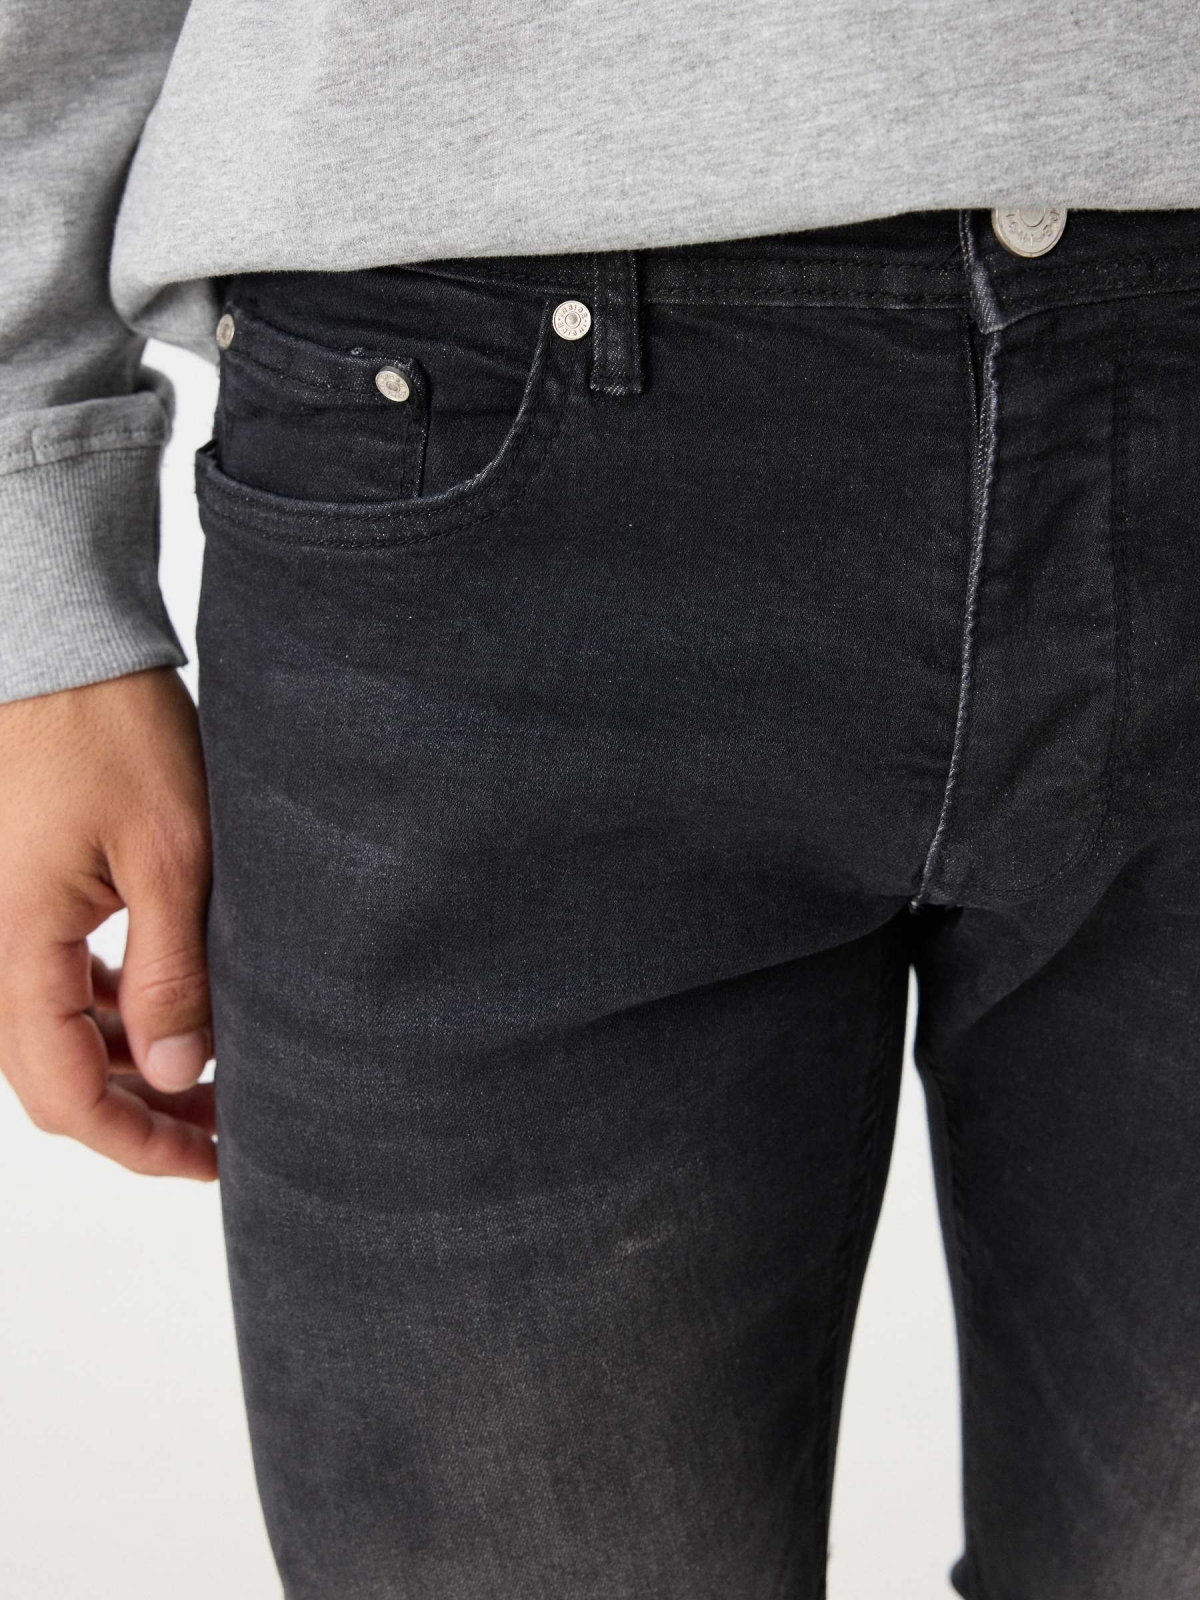 Jeans regular em preto lavado preto vista detalhe